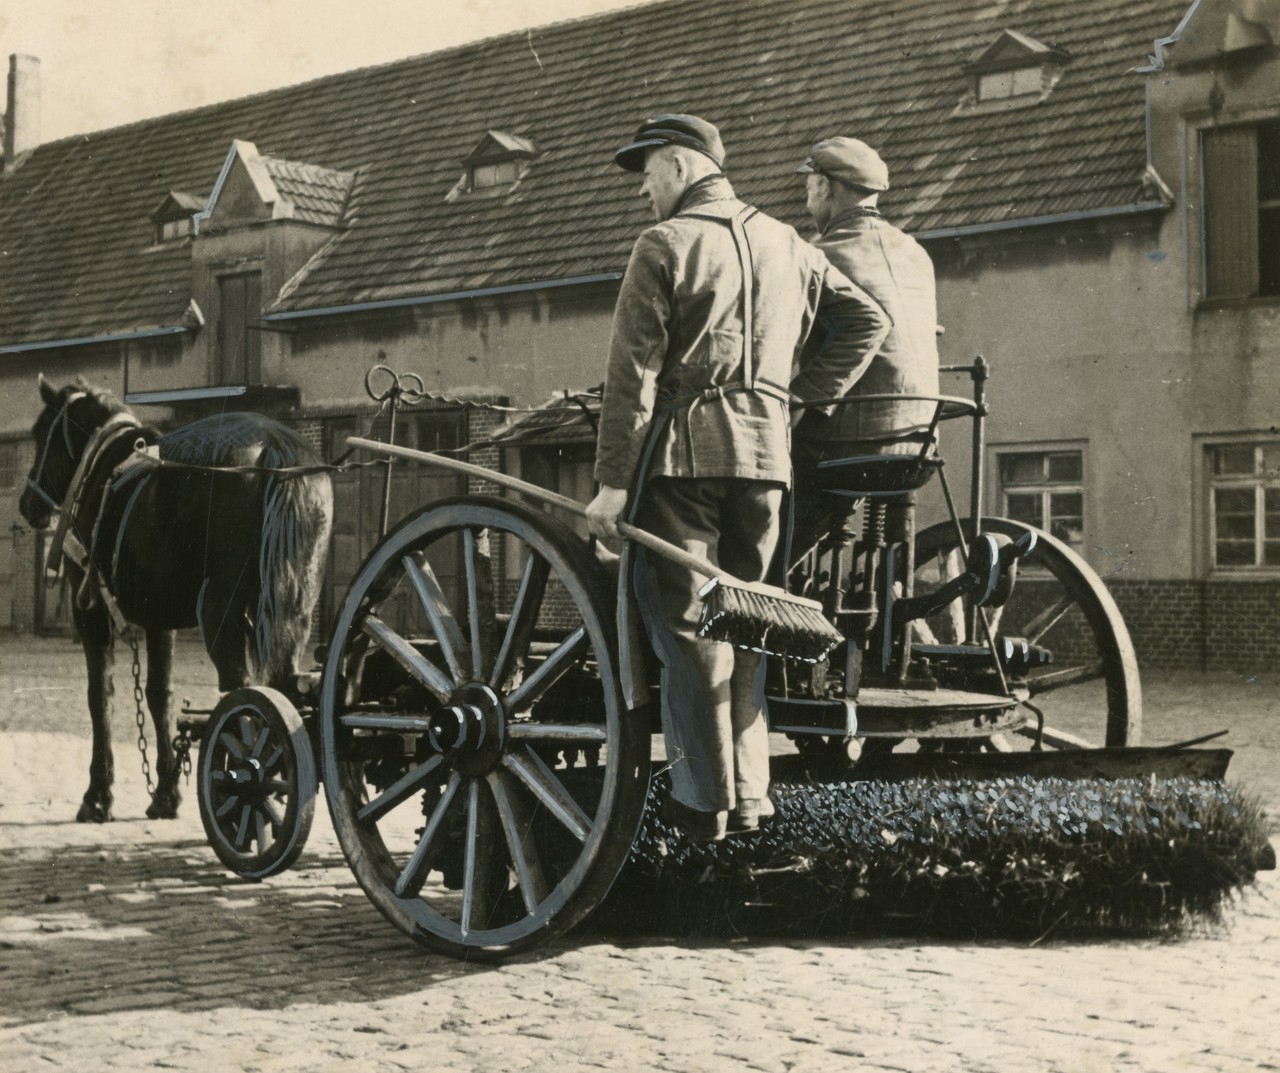 Vor der Anschaffung der Dreirad-Kehrmaschinen von Krupp waren diese pferdebetriebenen Wagen im Einsatz, 1920, StArchBi, Fotosammlung, 21-001-037, Foto: FP.